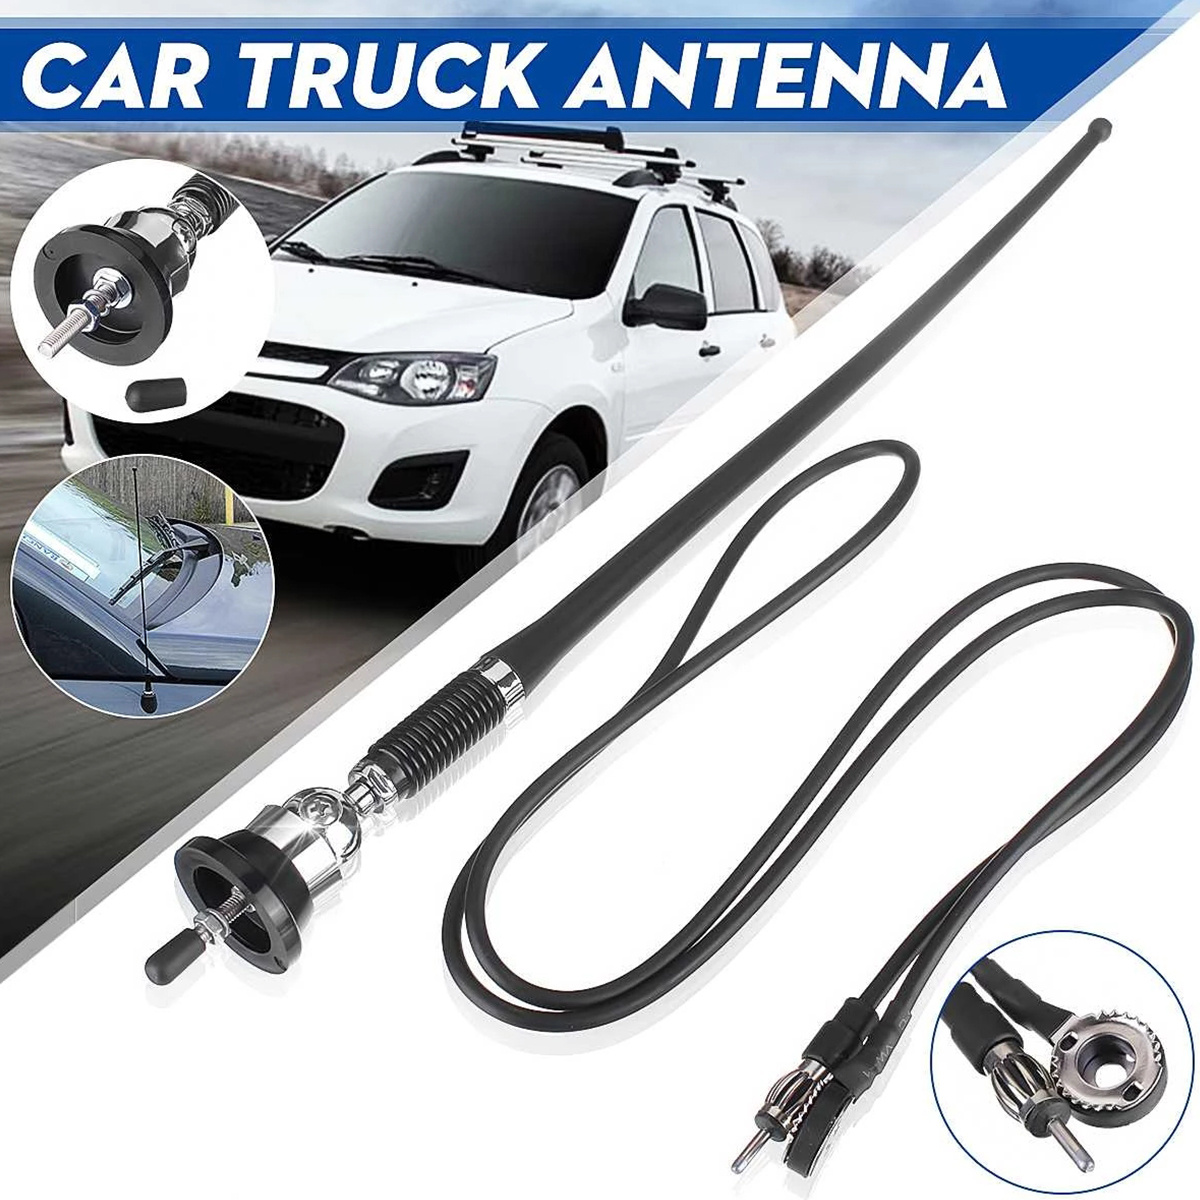 Antena de coche estéreo para coche, antena de radio FM AM montaje adhesivo  para coche, antena de parche oculto para vehículo, camión, SUV, estéreo de